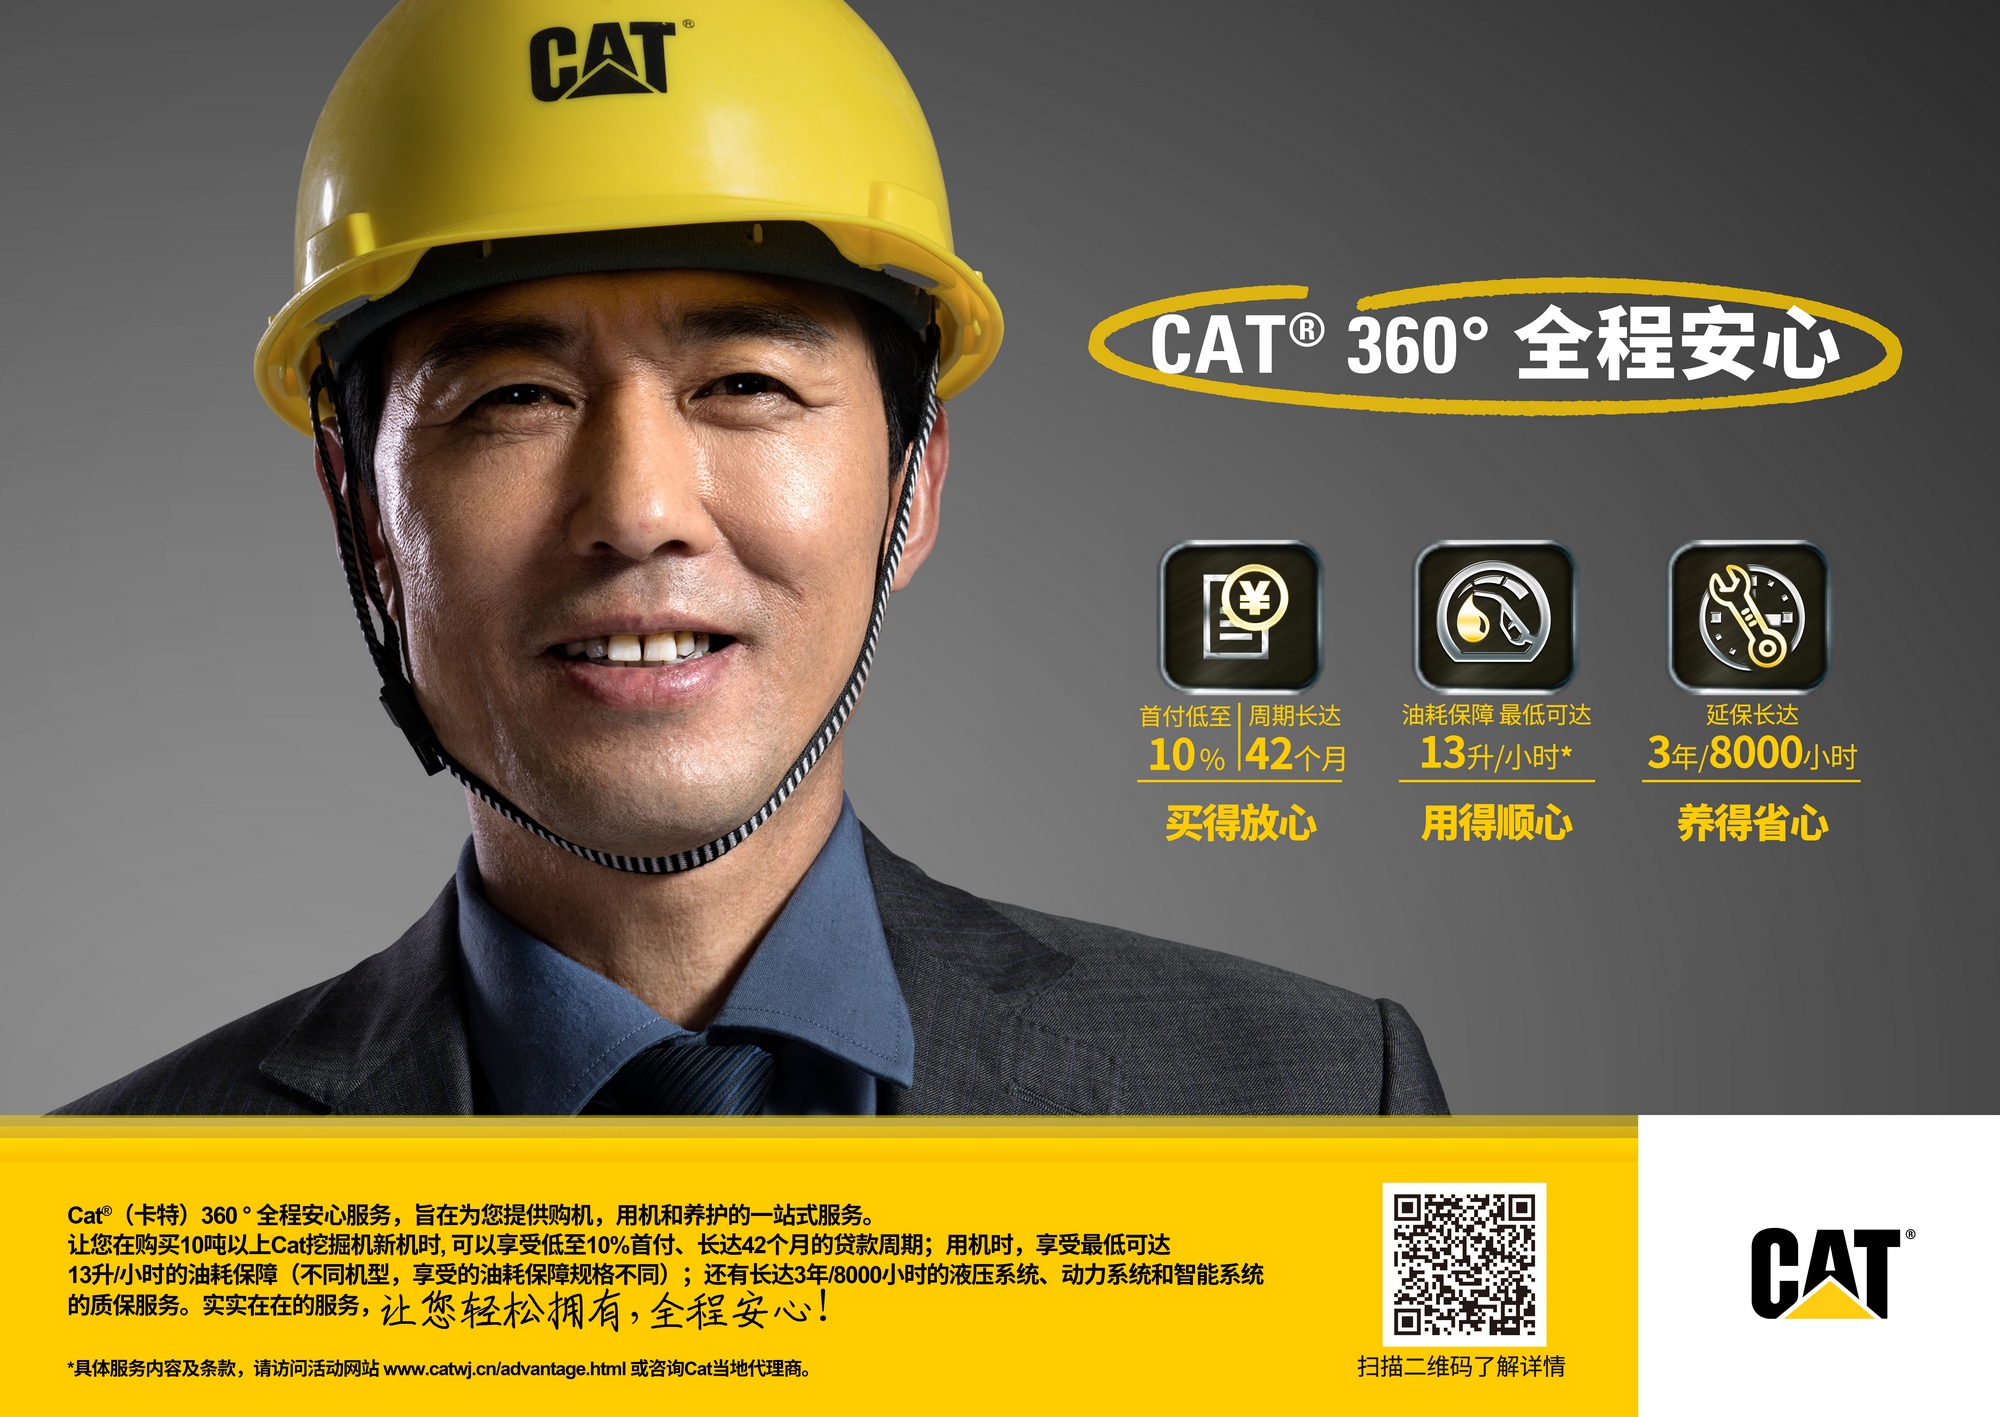 Cat 360全程安心服务 - 轻松拥有，全程安心.jpg